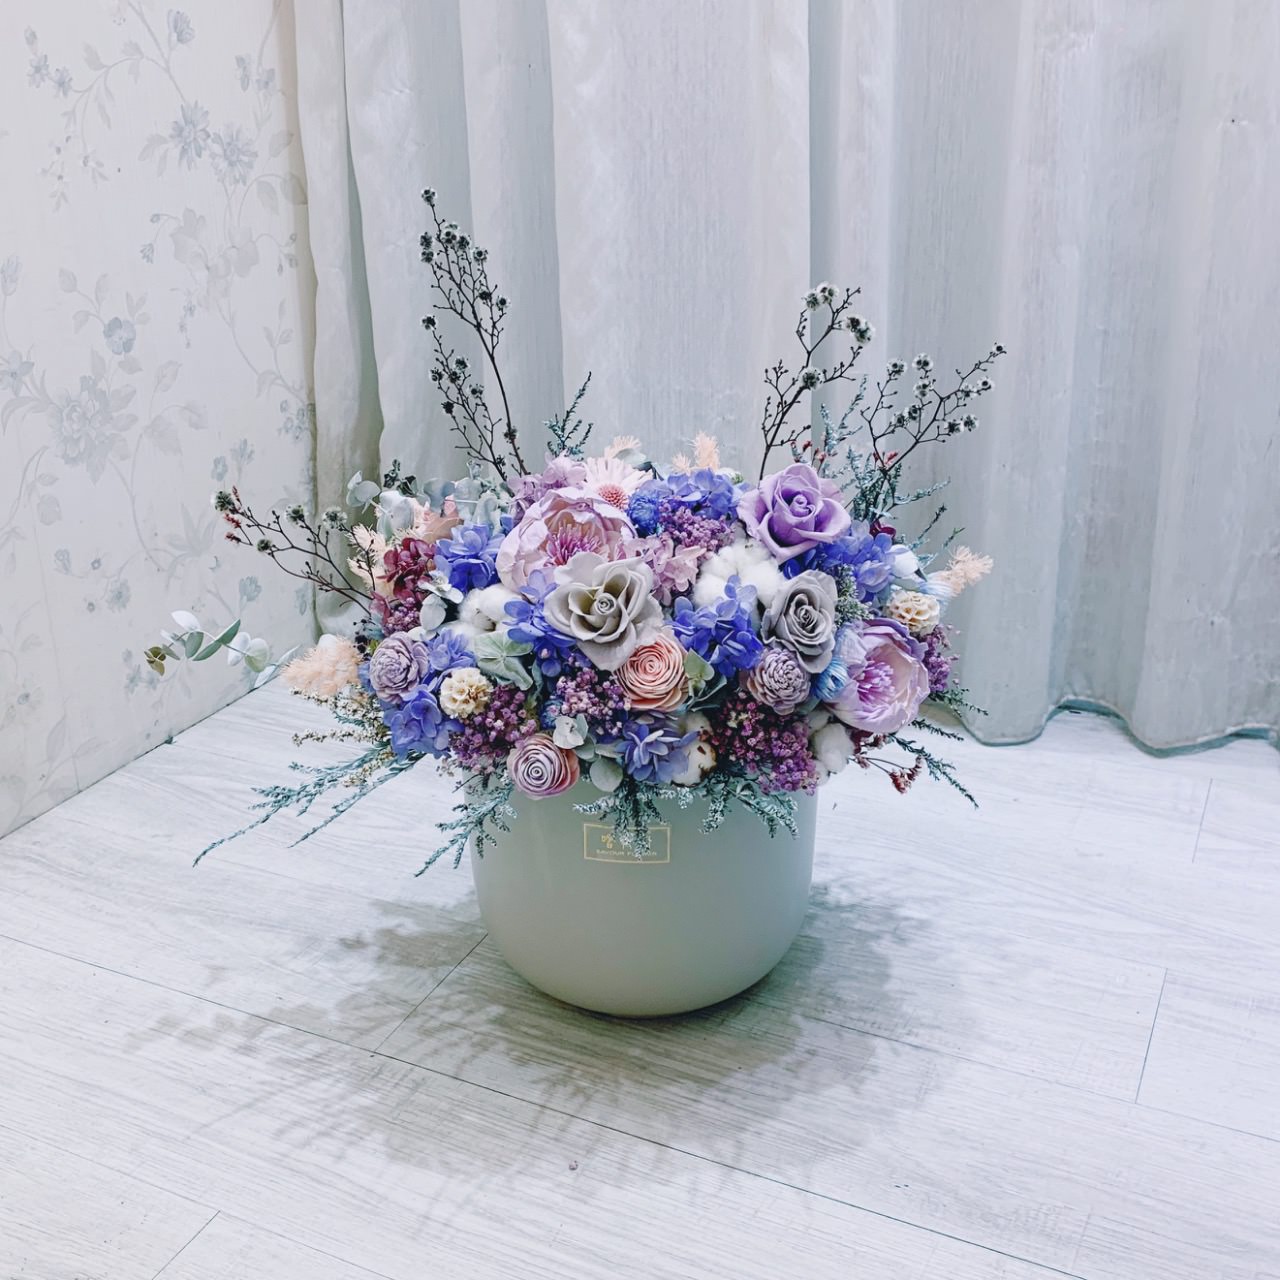 台北專業花店嚐花閣提供客製化的乾燥開幕桌花和新鮮開幕桌花。